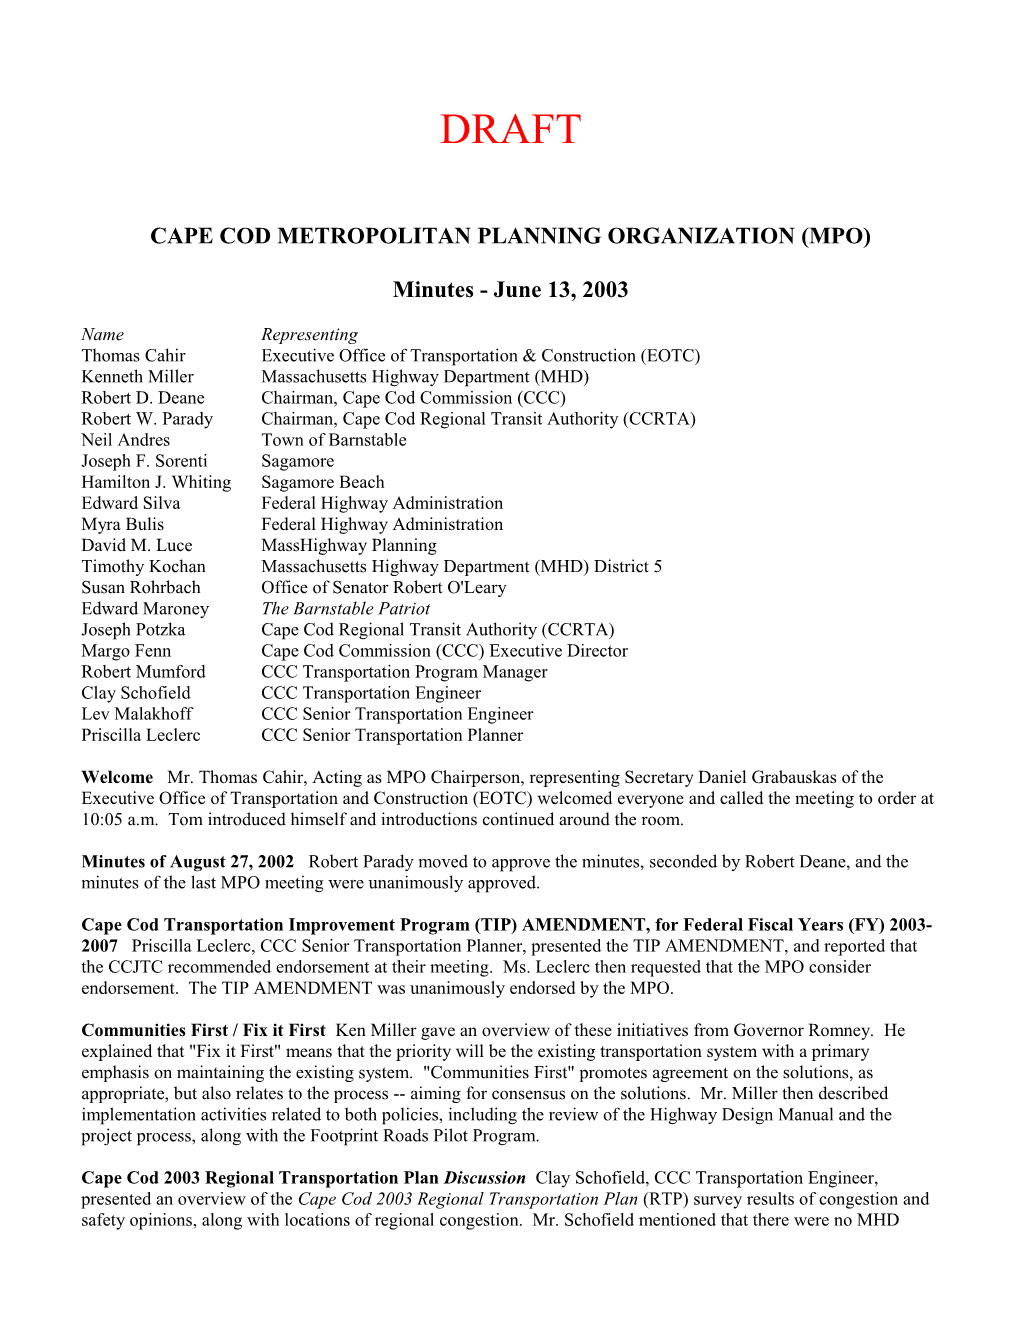 Cape Cod Metropolitan Planning Organization (Mpo)